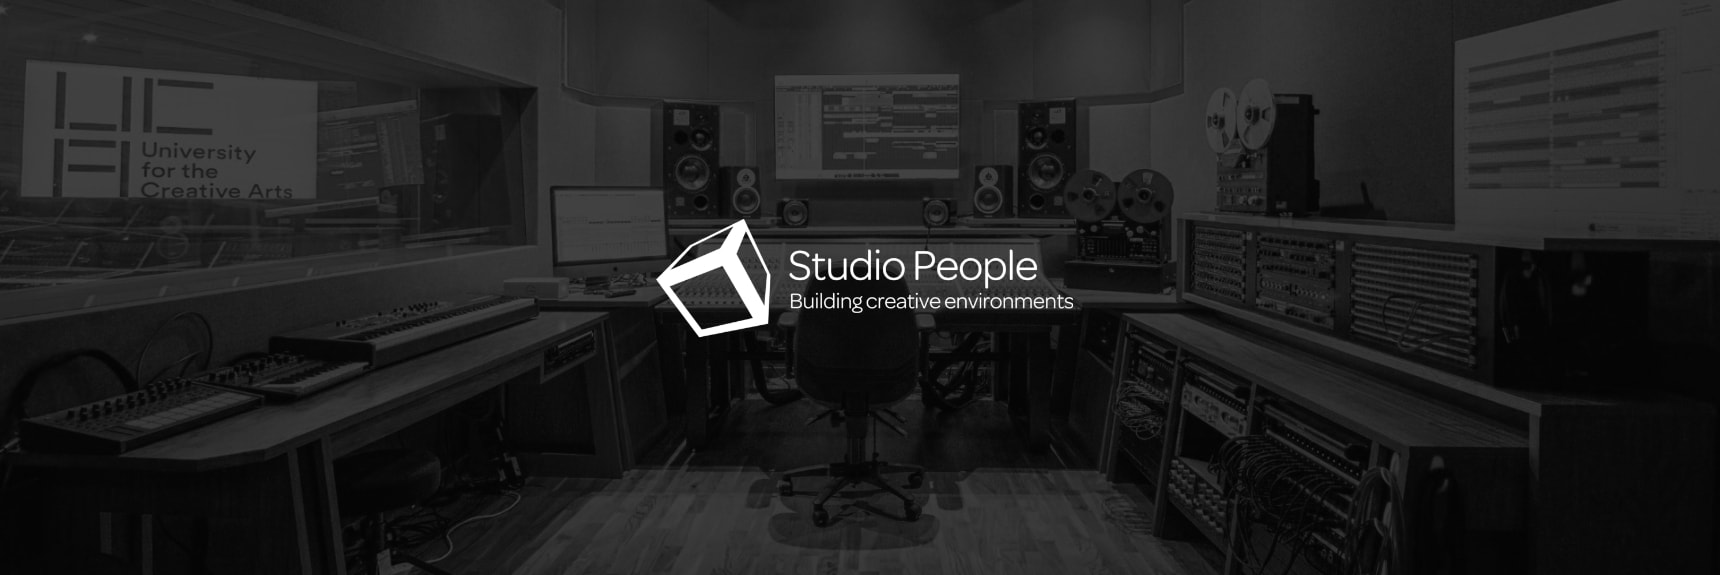 The Studio People